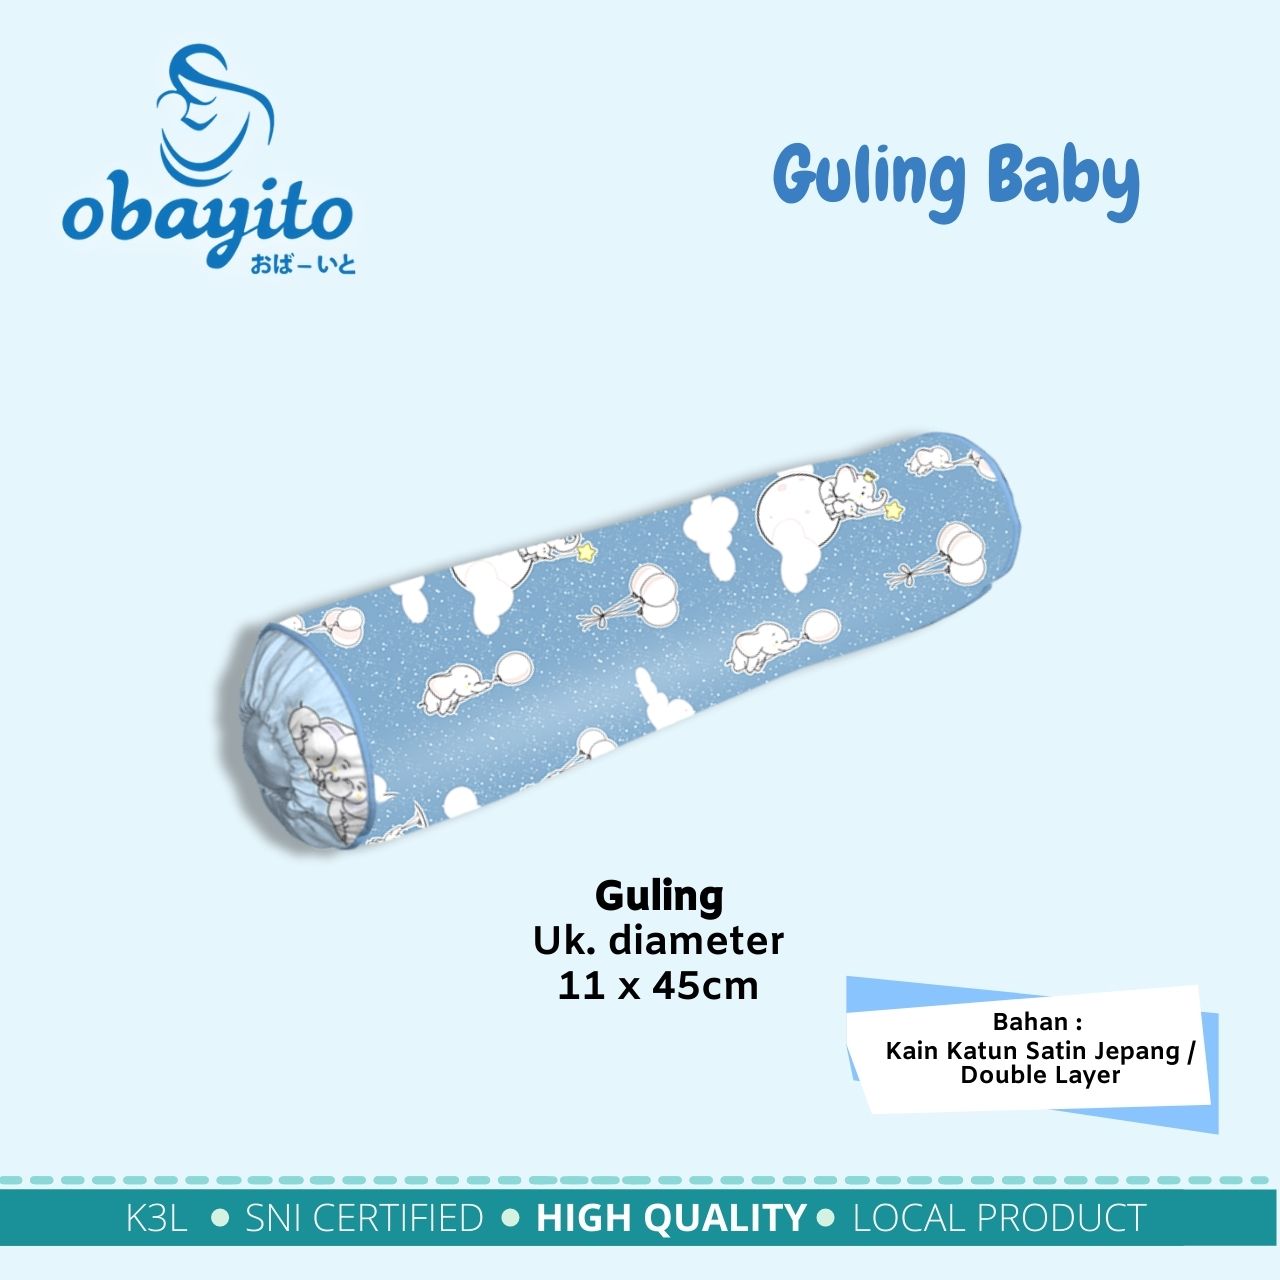 Guling baby obayito